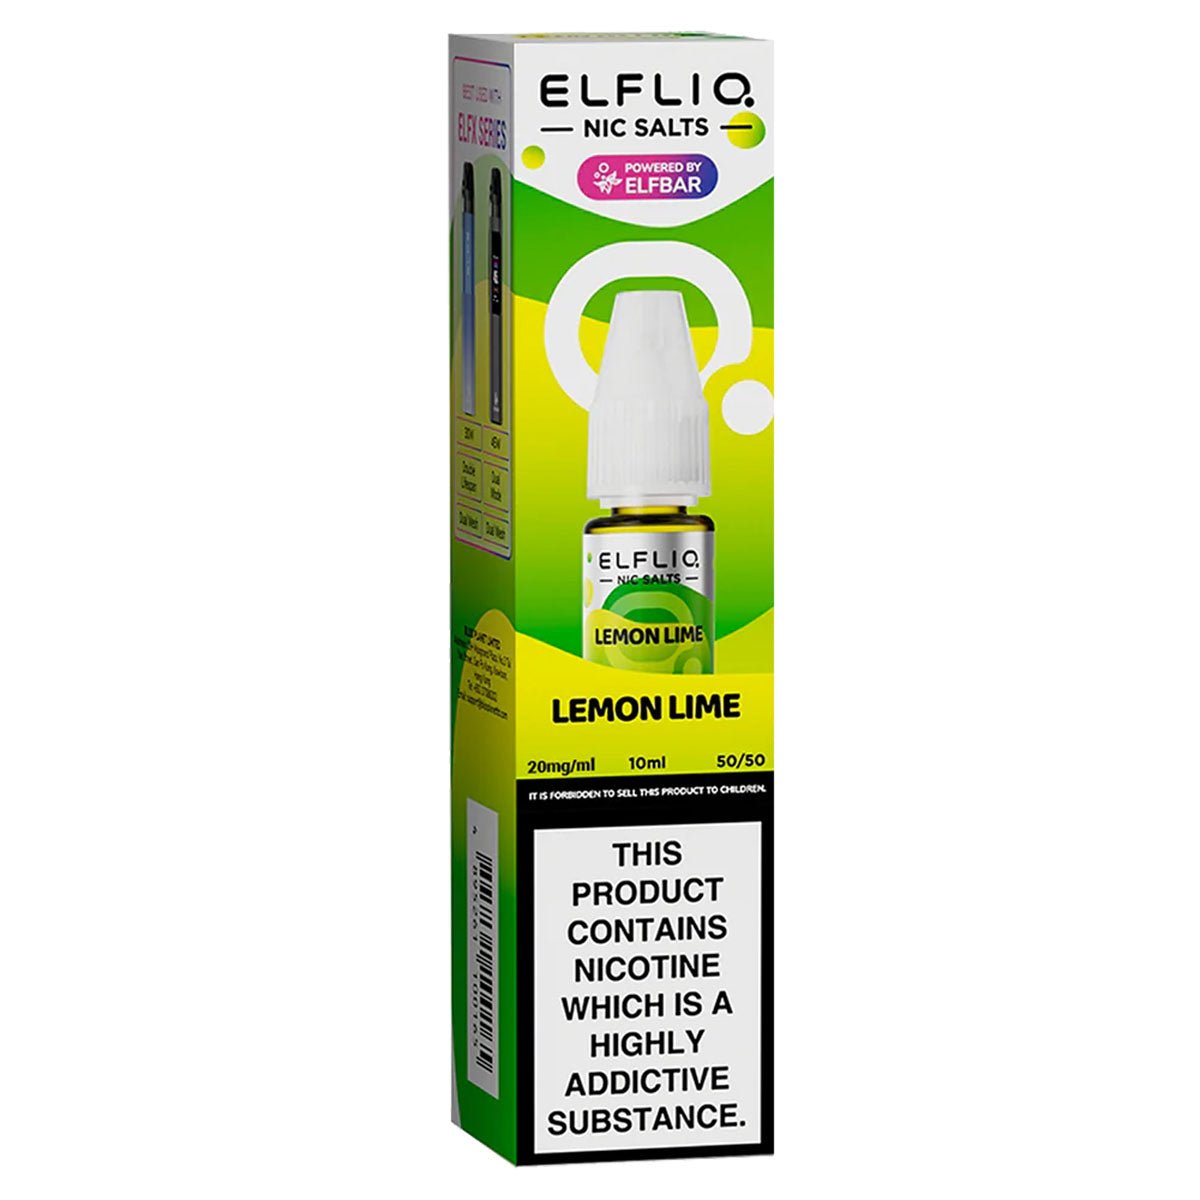 Lemon Lime 10ml Nic Salt By Elf Bar Elfliq - Prime Vapes UK